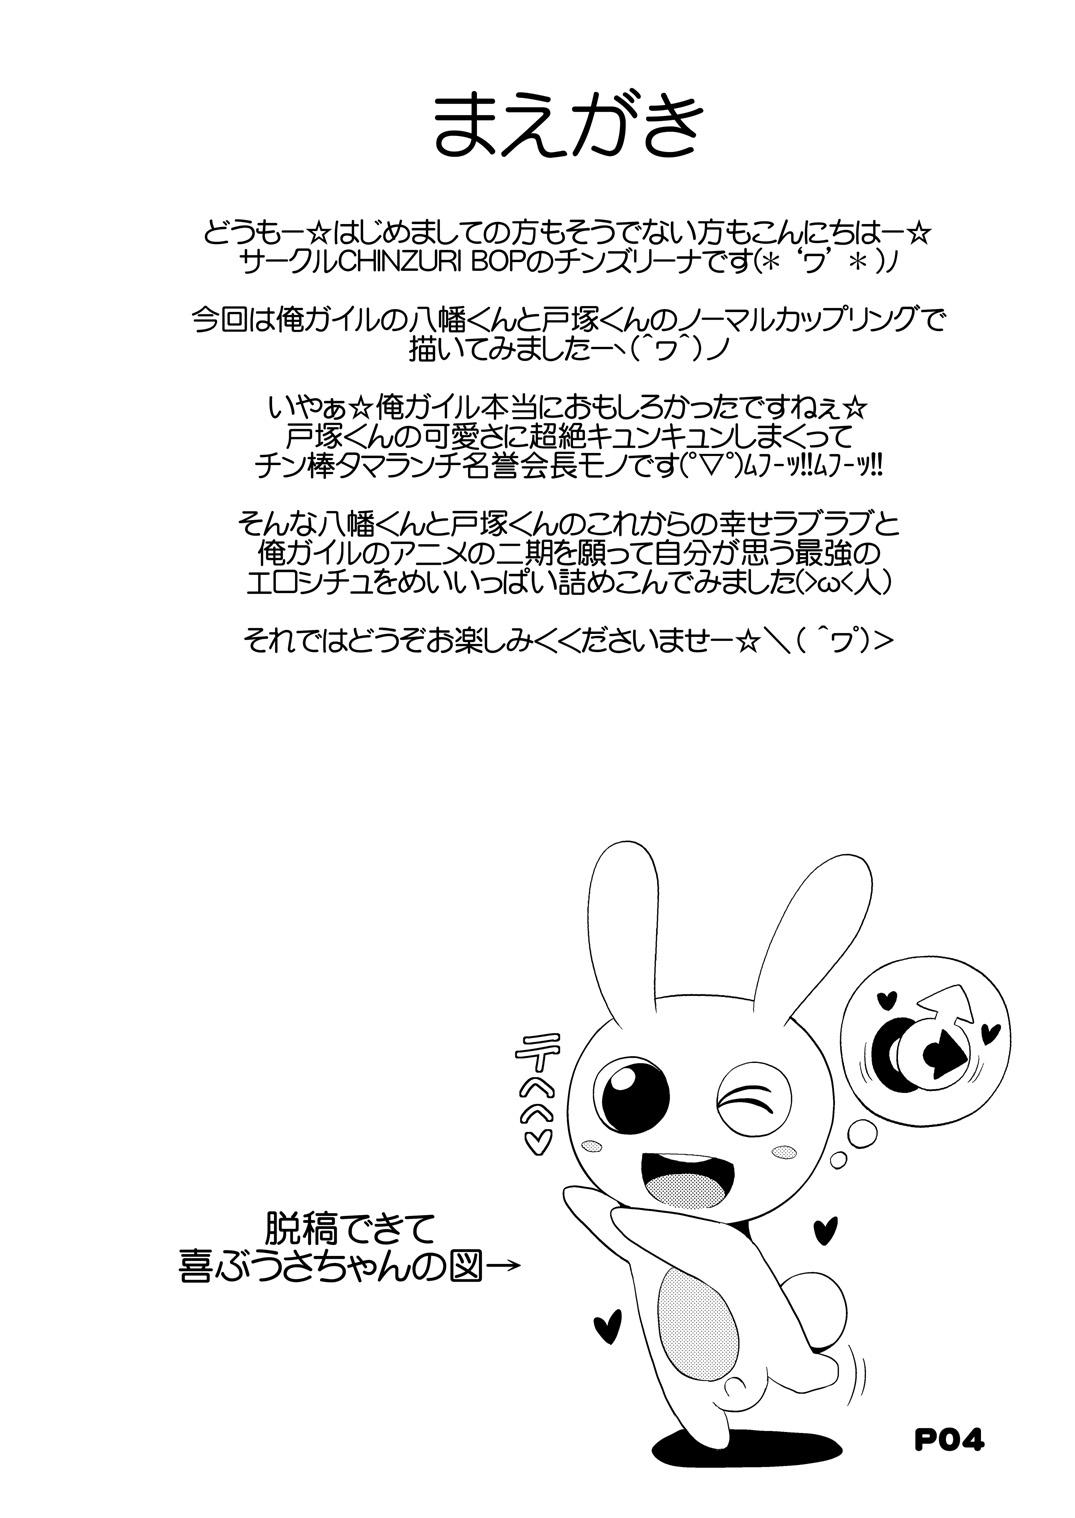 Shaking Comic Furechin 2013-08 - Yahari ore no seishun love come wa machigatteiru Analfucking - Page 3